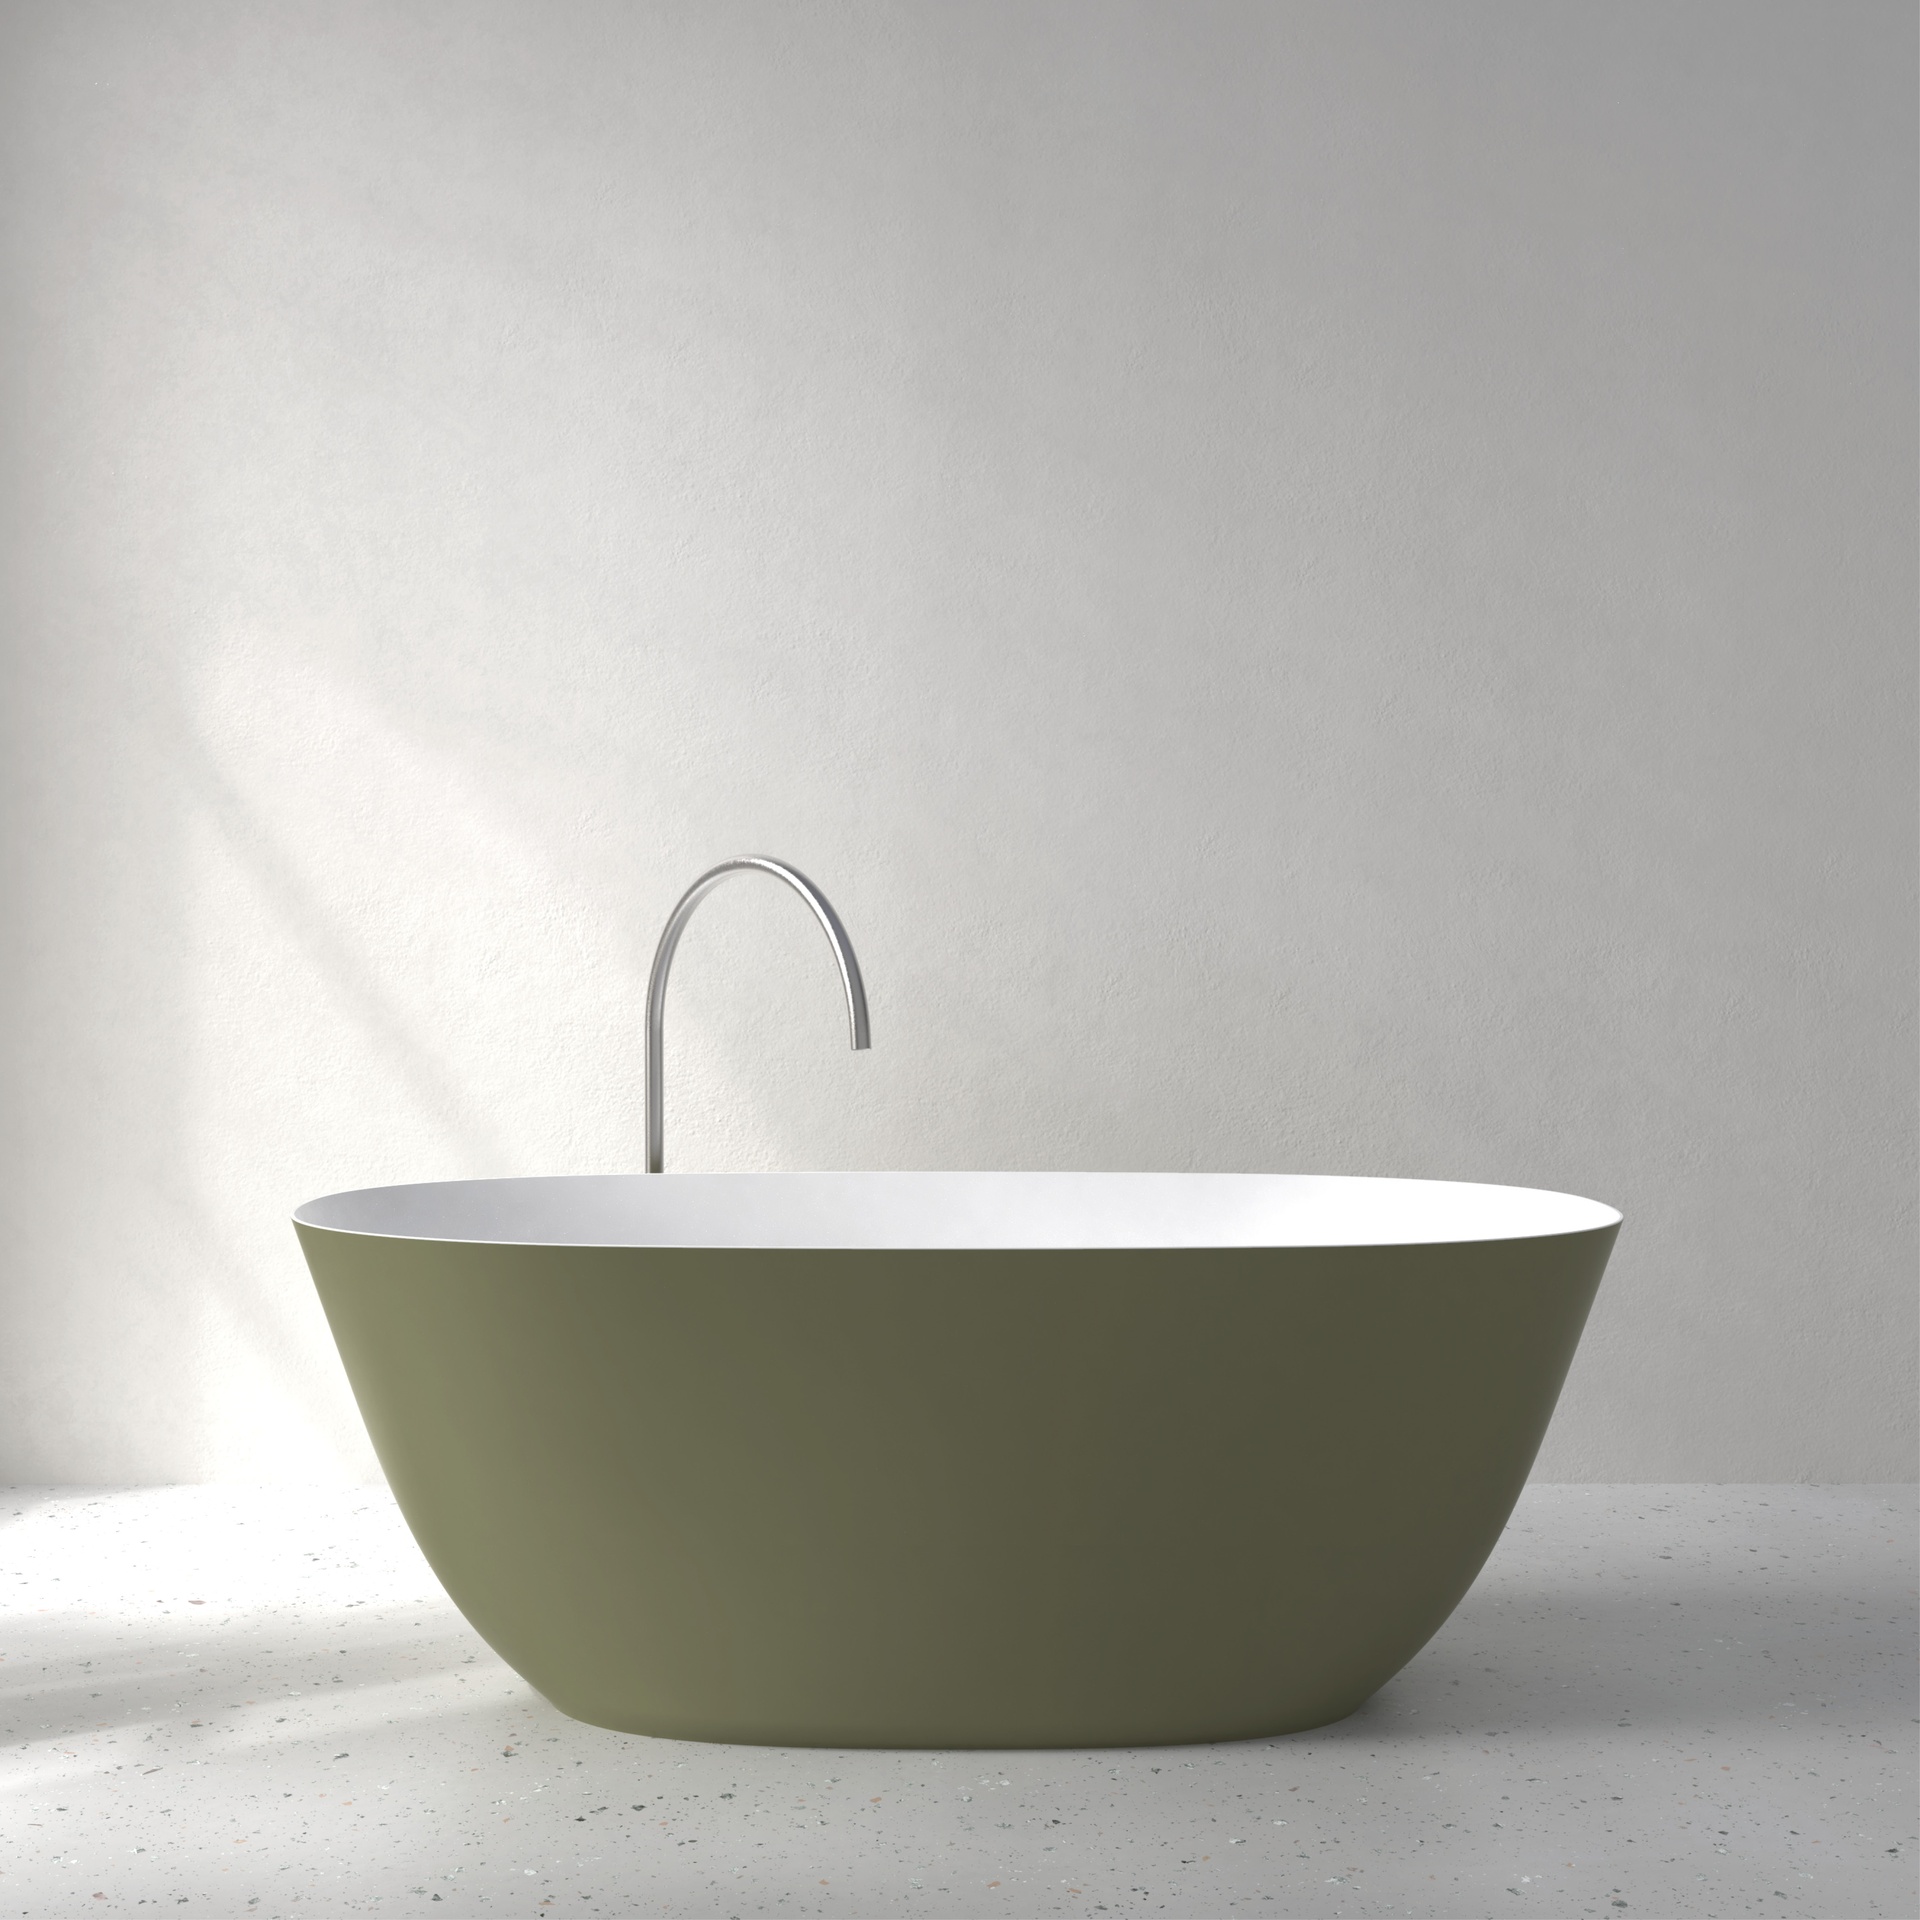 [FFI02-SNCS] Fine bath with Soft Touch (w1600 x d700 x h580mm, NCS color)